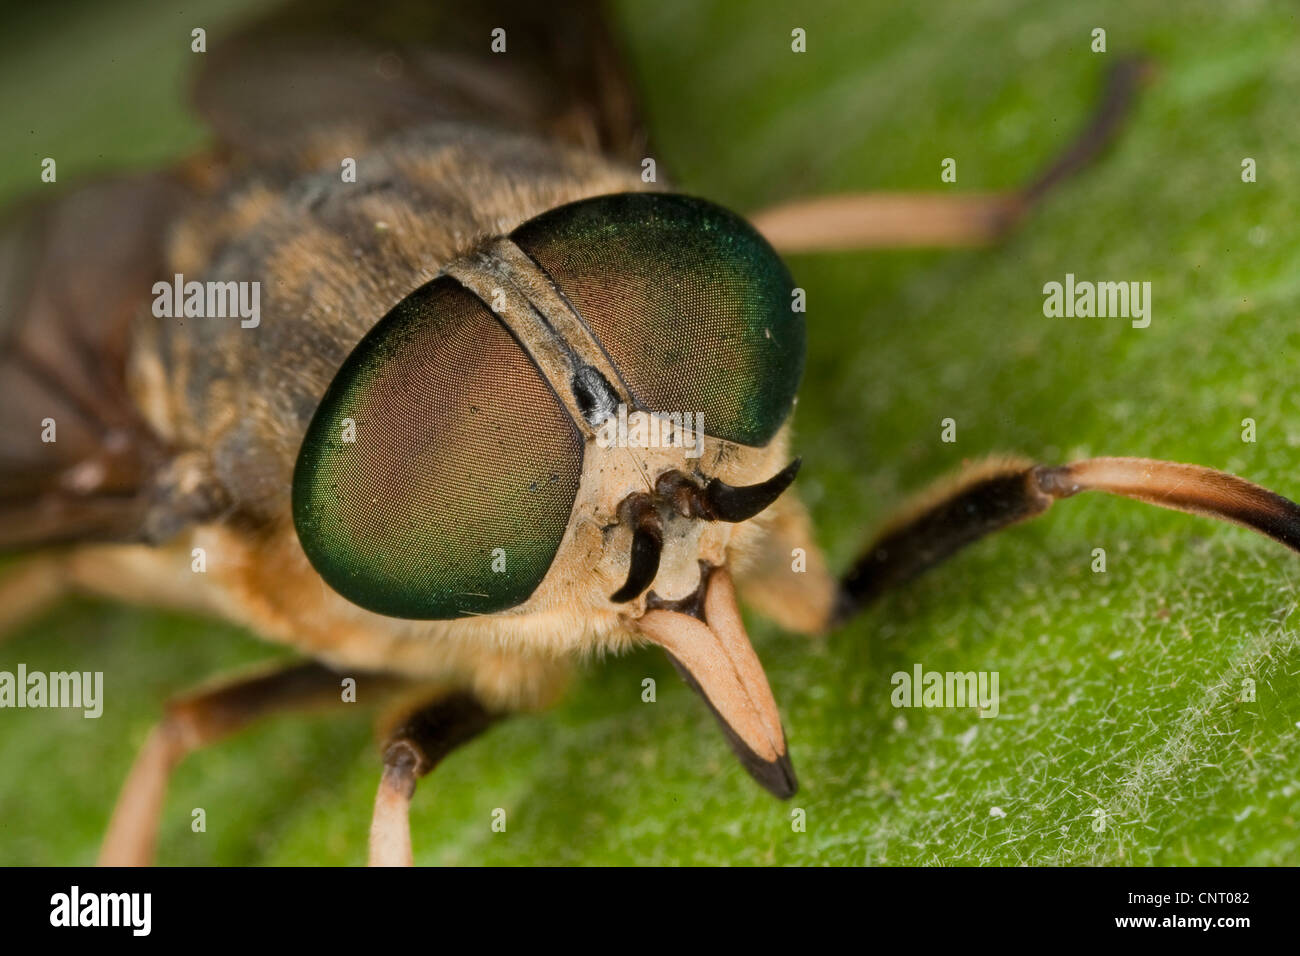 large horsefly (Tabanus bovinus), with stinging mandibles and compound eyes, Germany Stock Photo